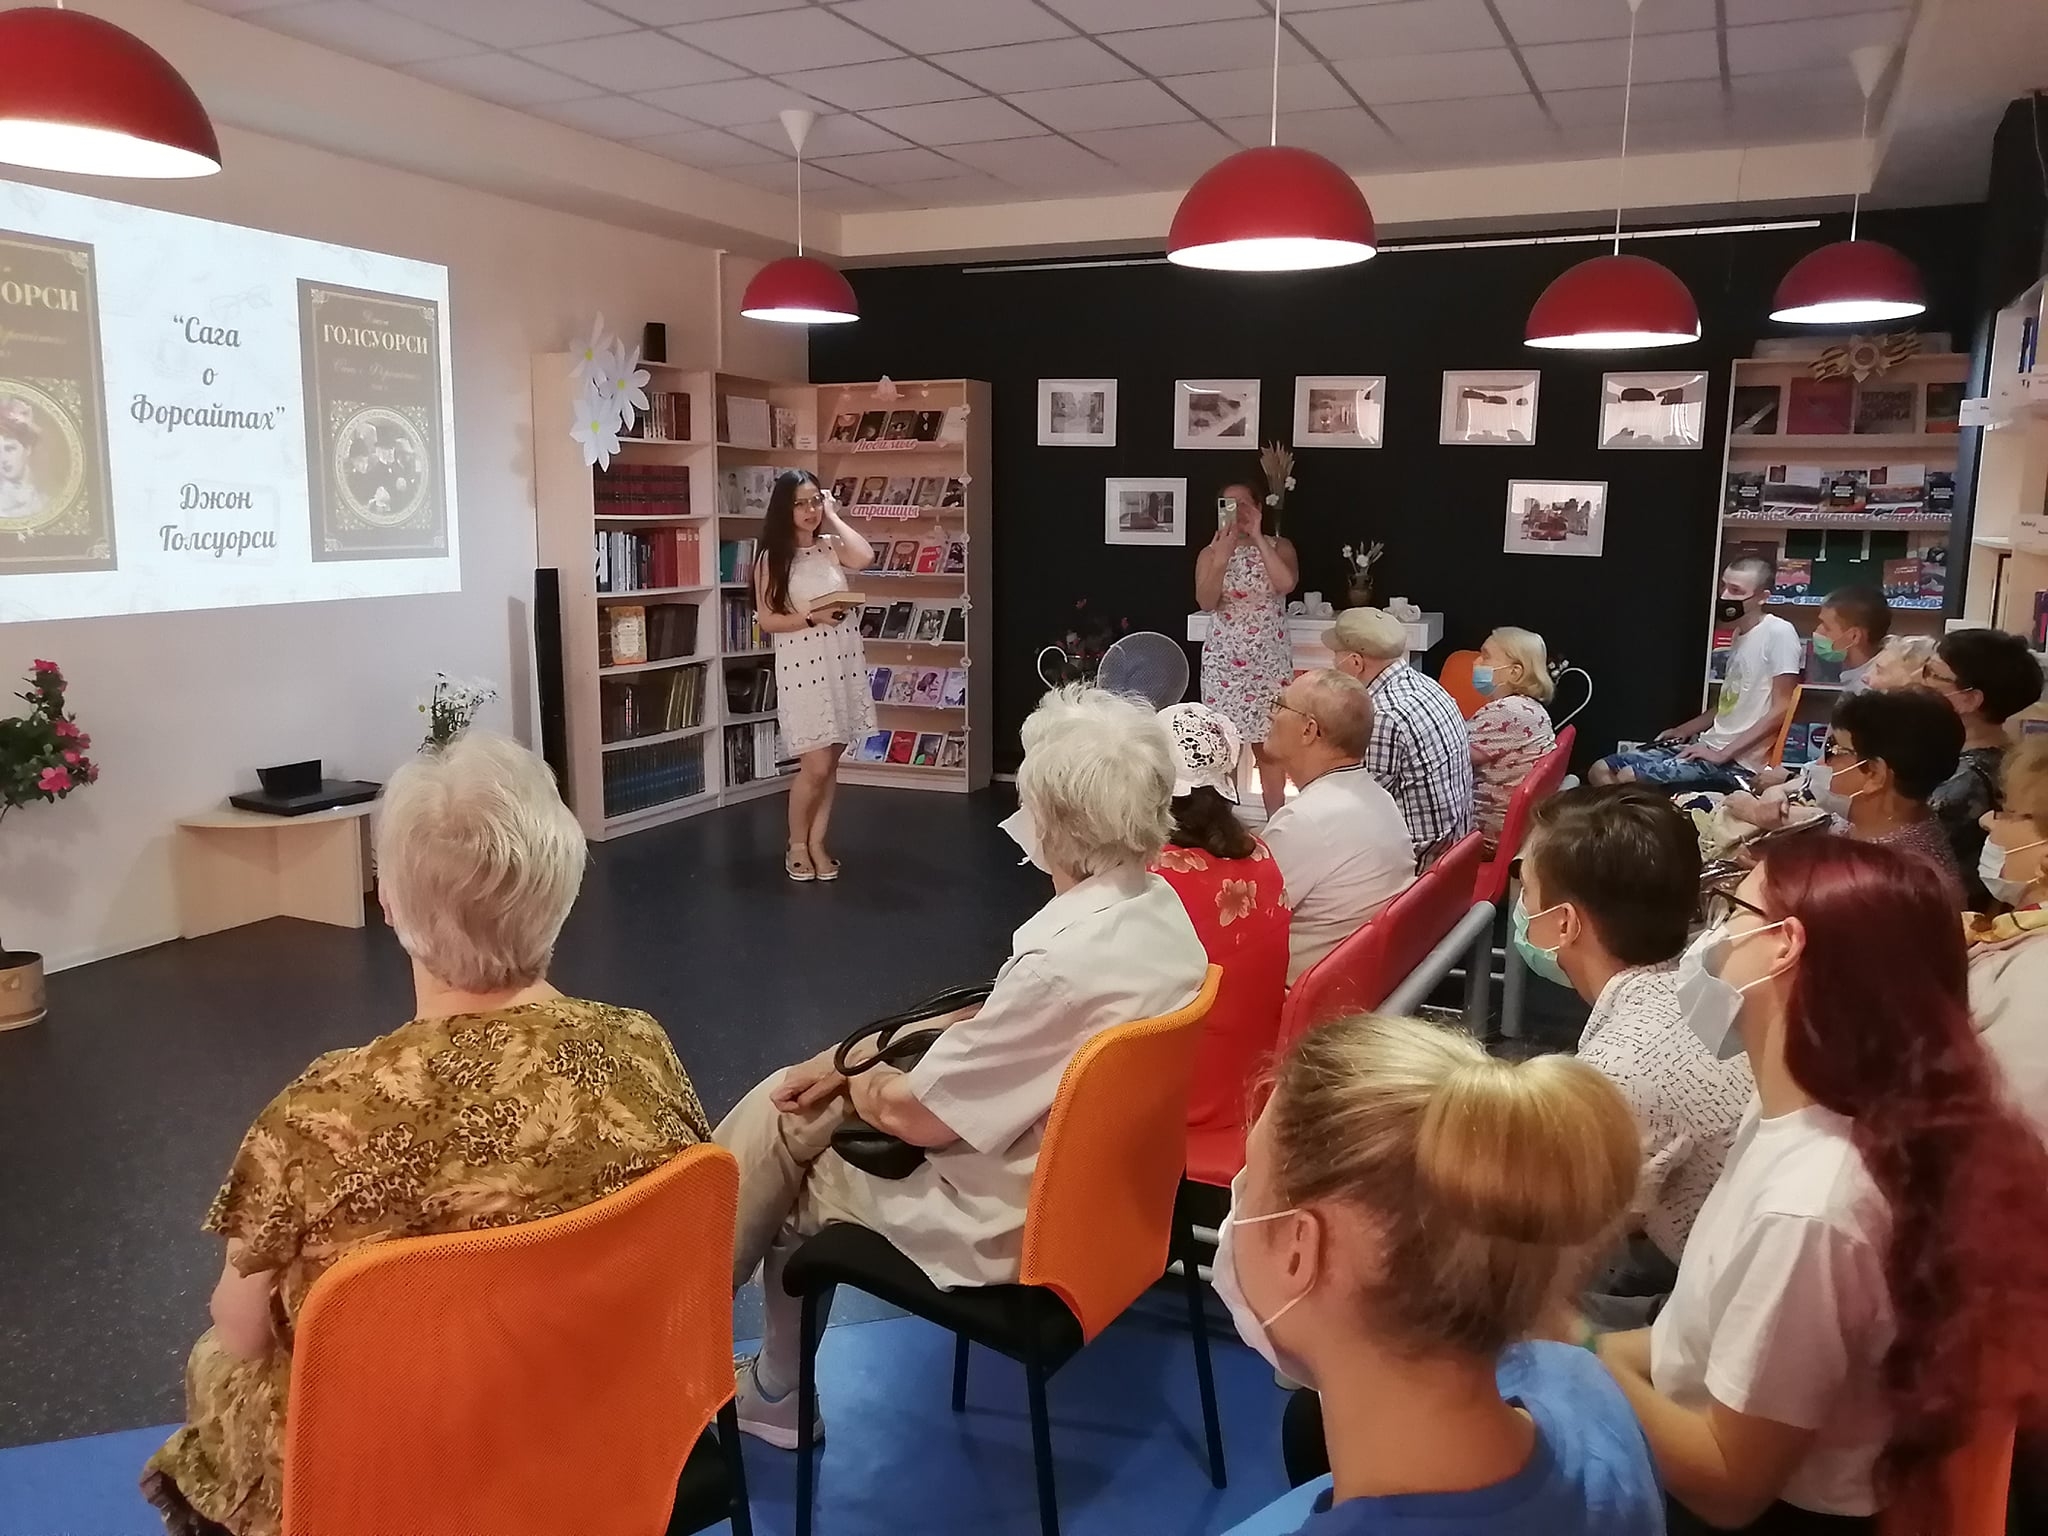 Представители Централизованной библиотечной системы Щербинки провели мероприятие в честь Дня семьи, любви и верности